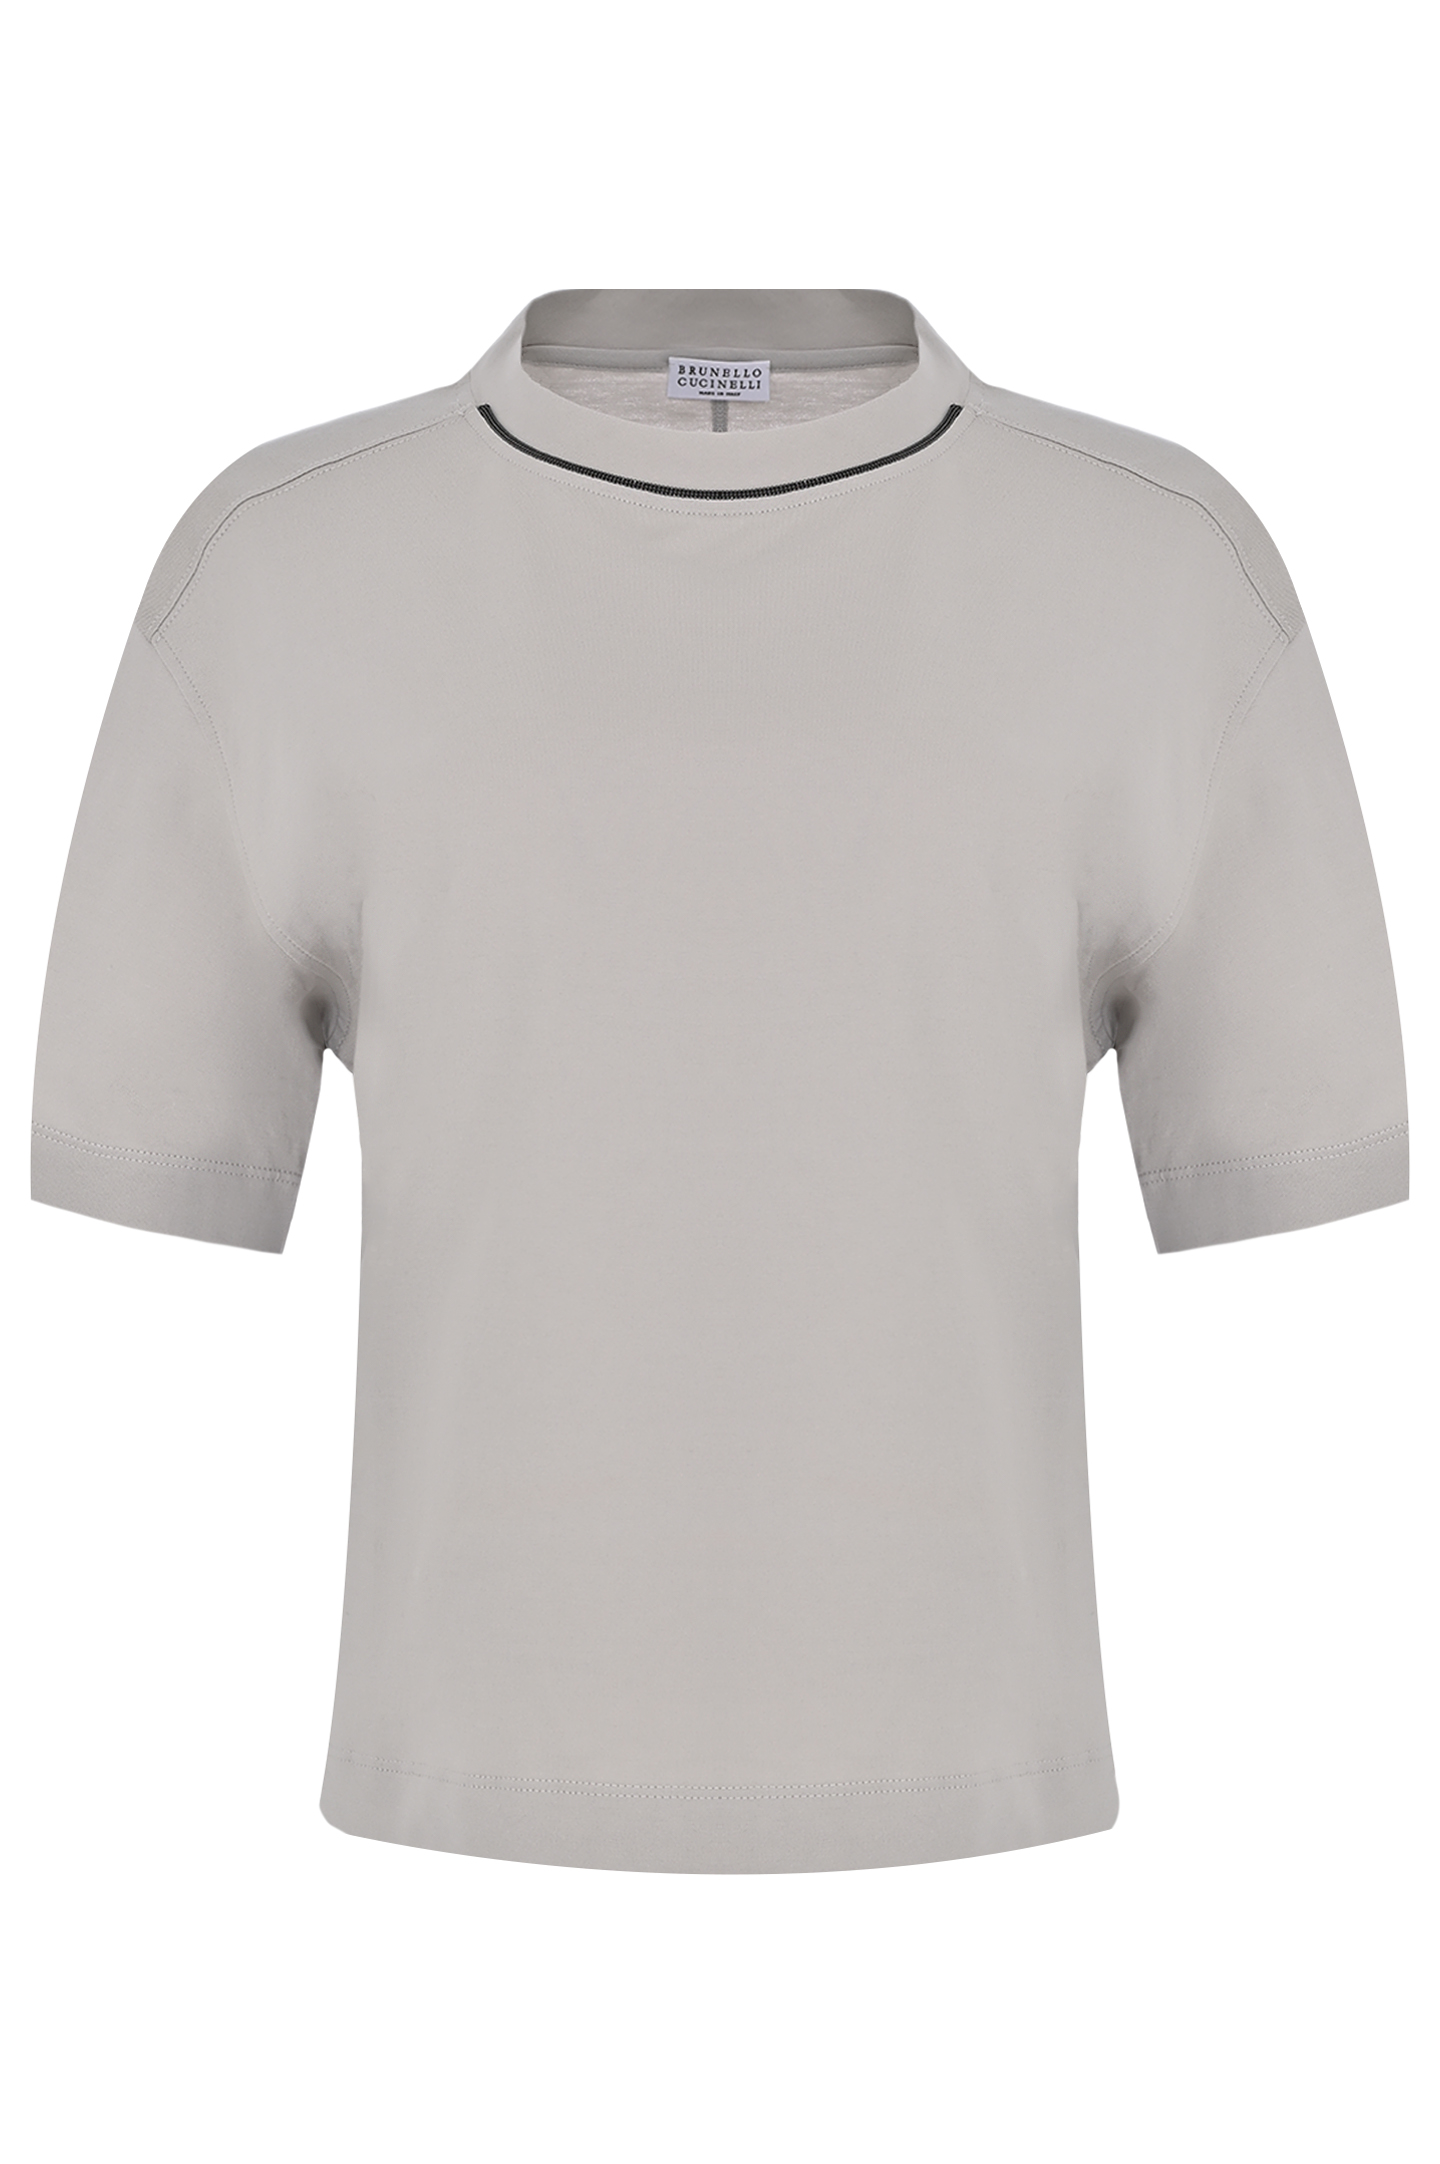 Хлопковая футболка с декором BRUNELLO  CUCINELLI M0T81EL330, цвет: Серый, Женский